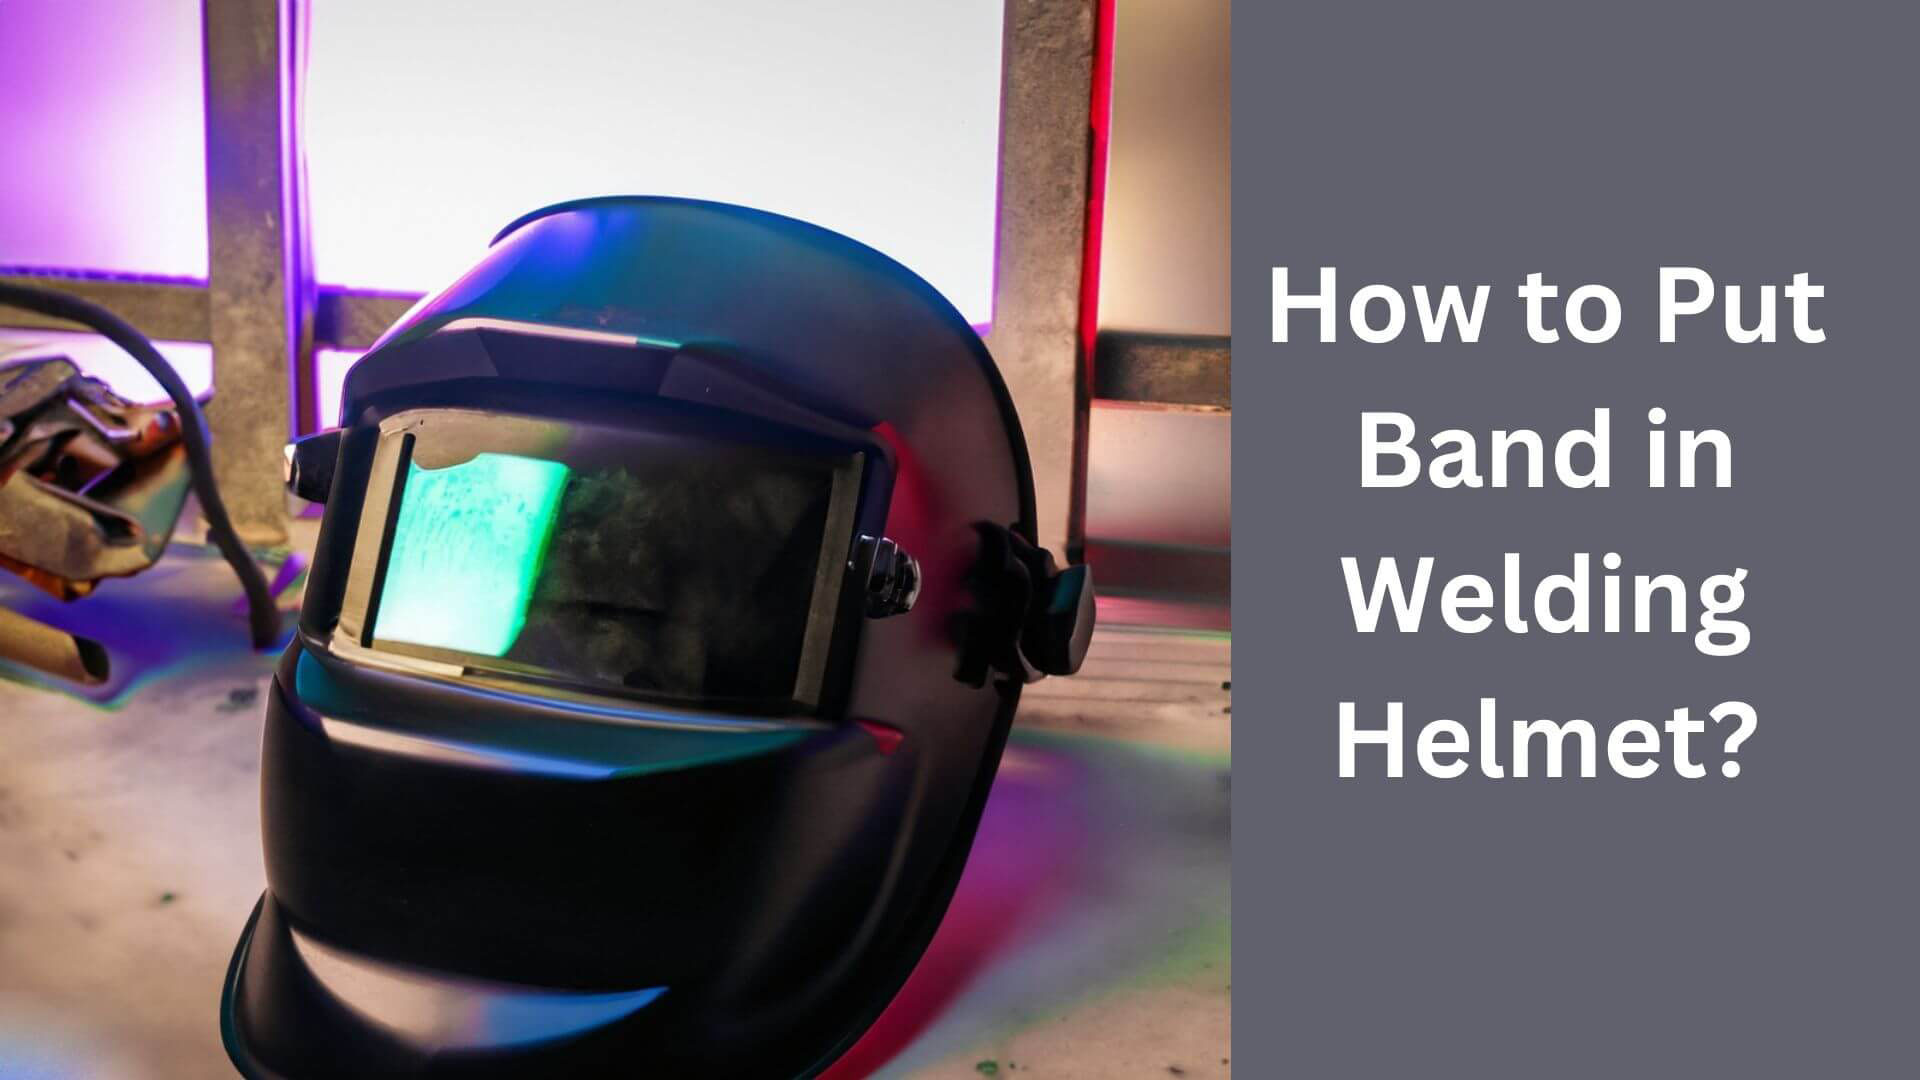 How to Put Band in Welding Helmet?